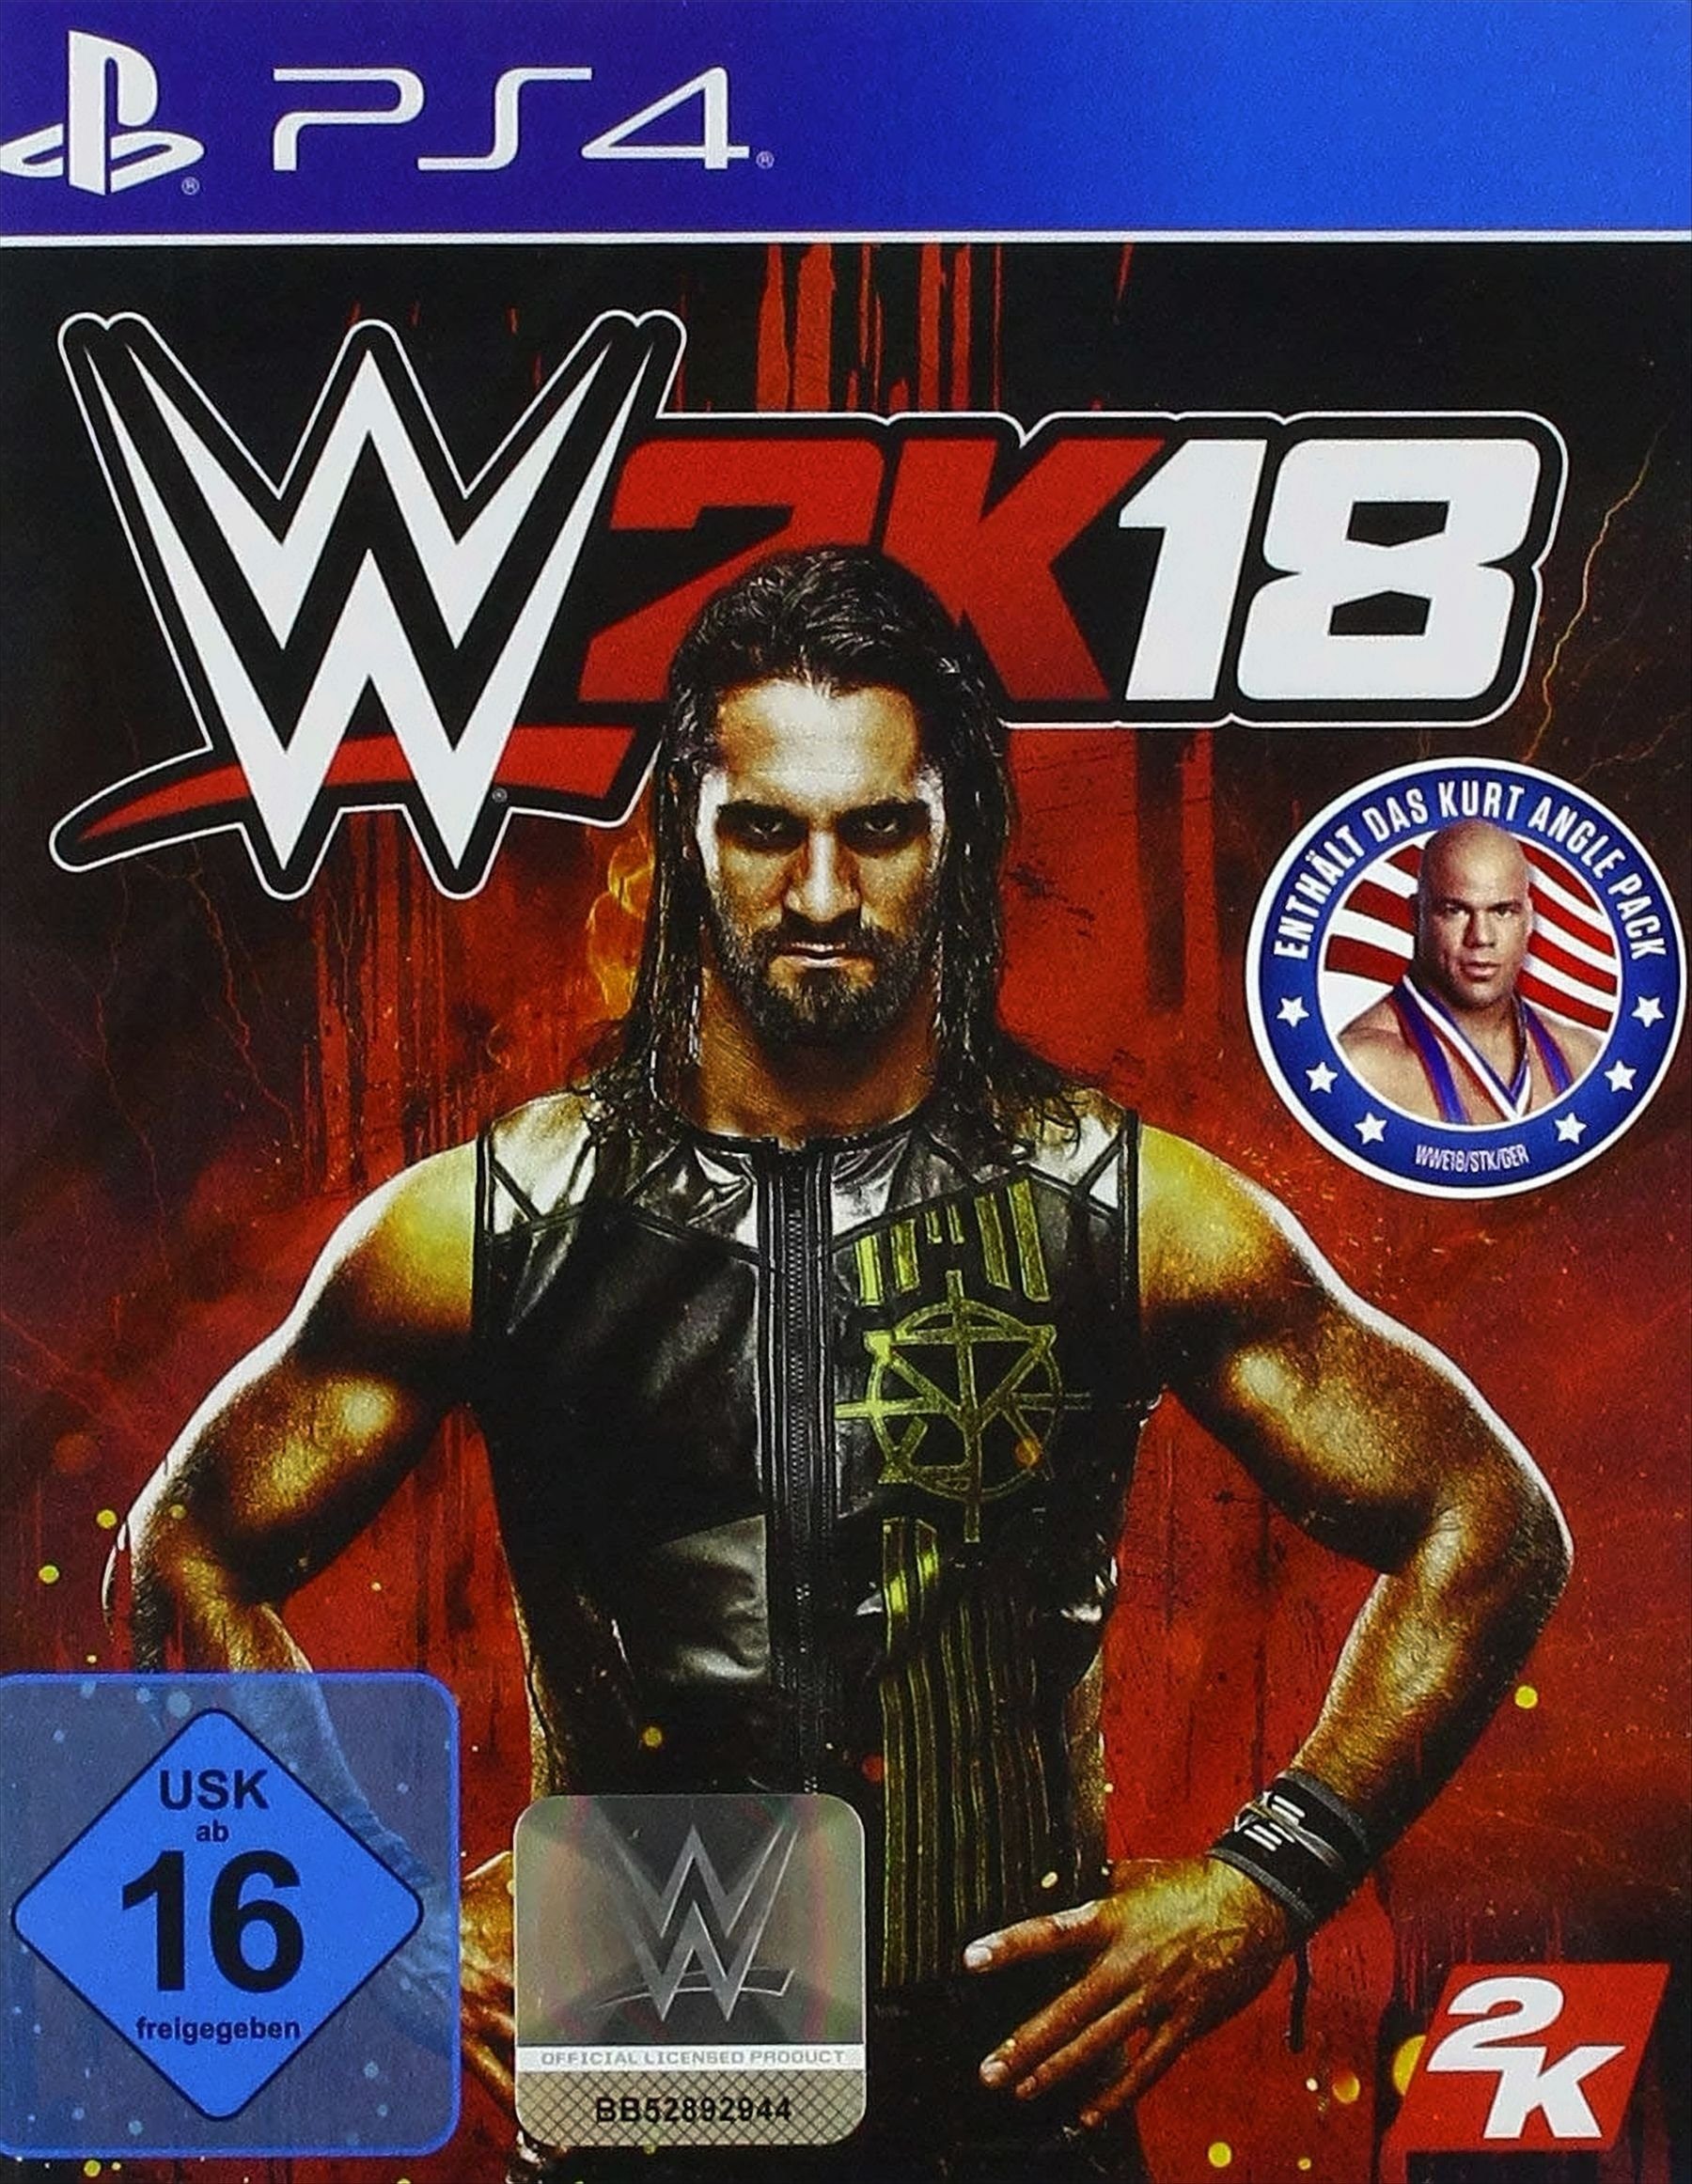 WWE 2K18 Playstation 4